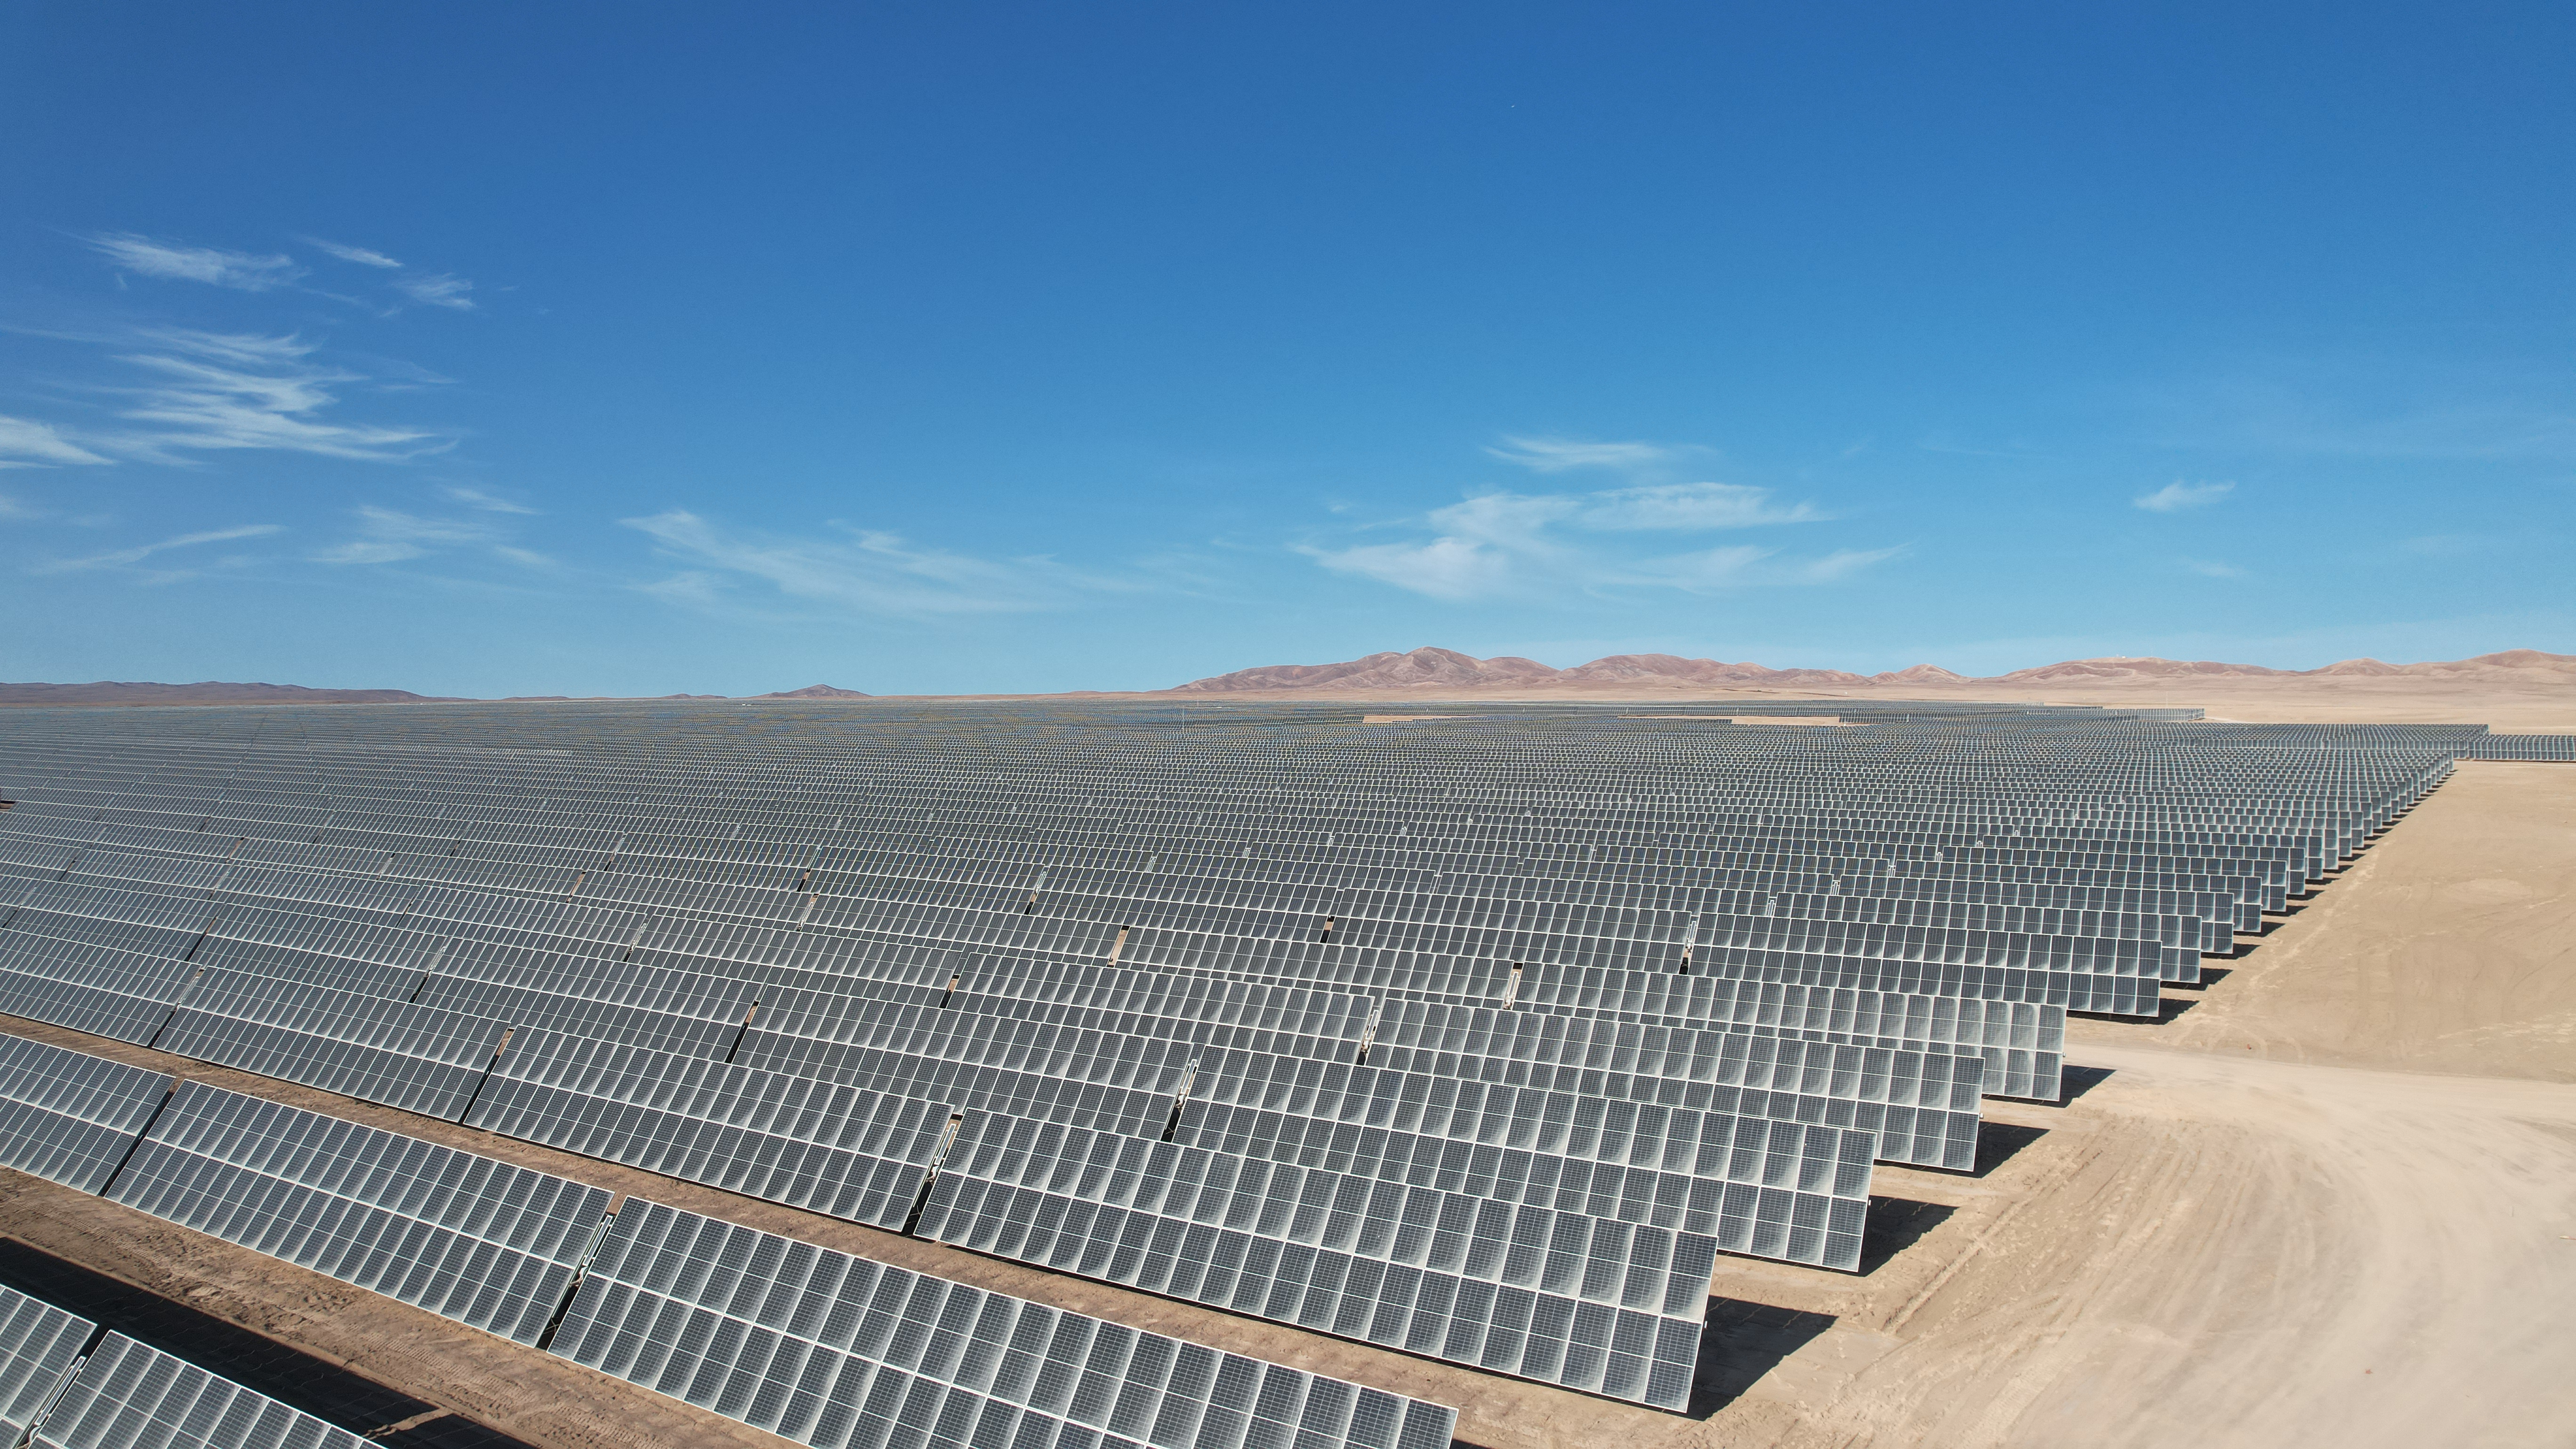 Planta Solar Tamaya recibe permiso de operación comercial por parte del Coordinador Eléctrico Nacional